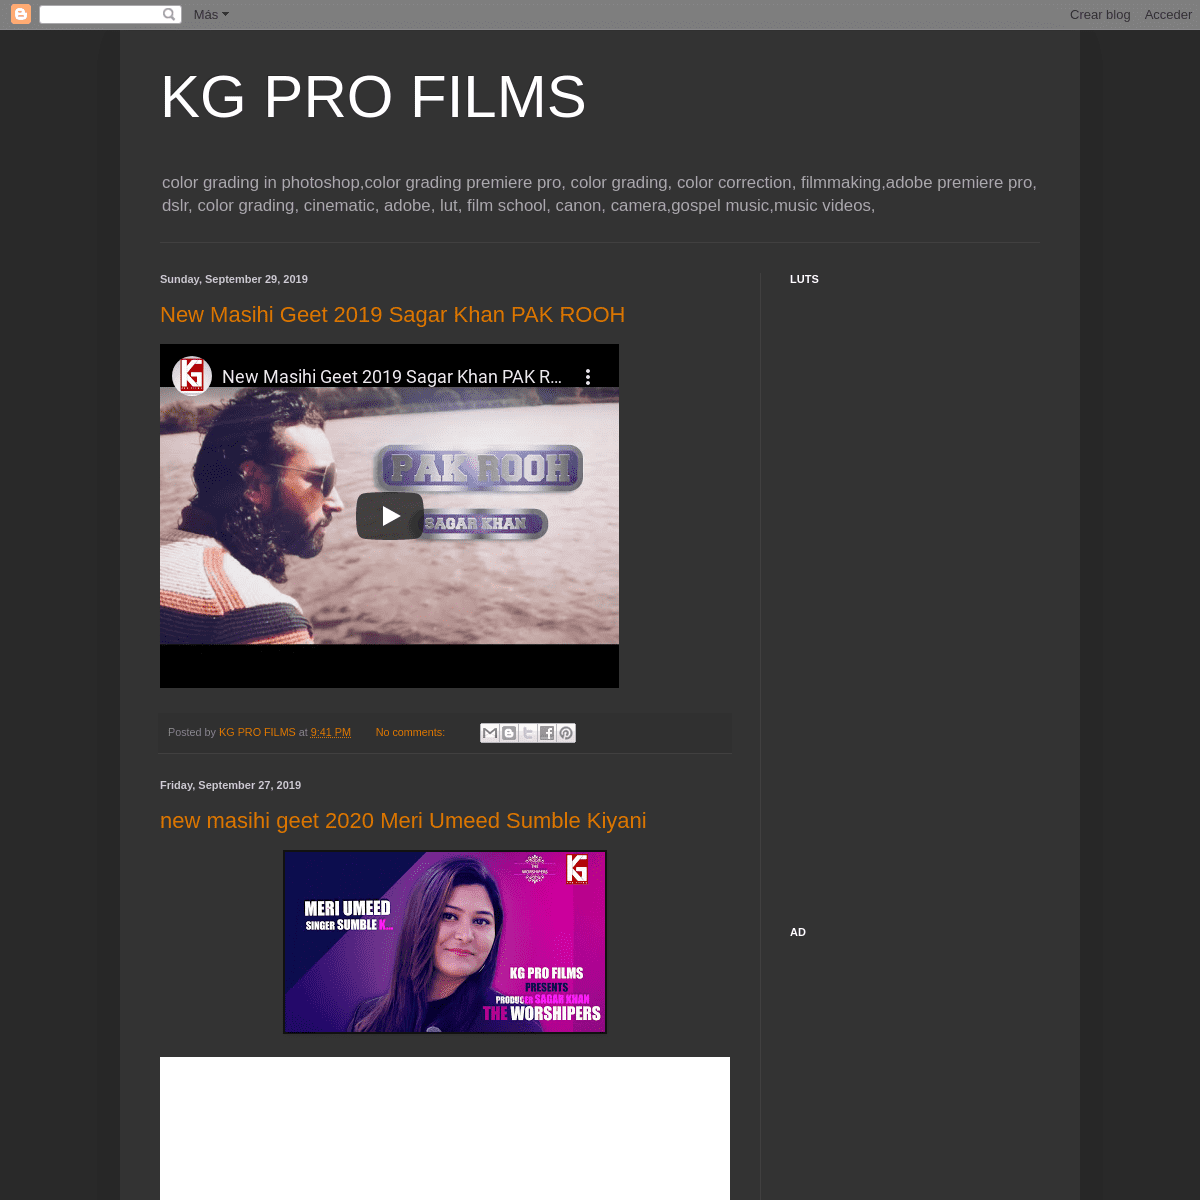 A complete backup of kgfilms.blogspot.com